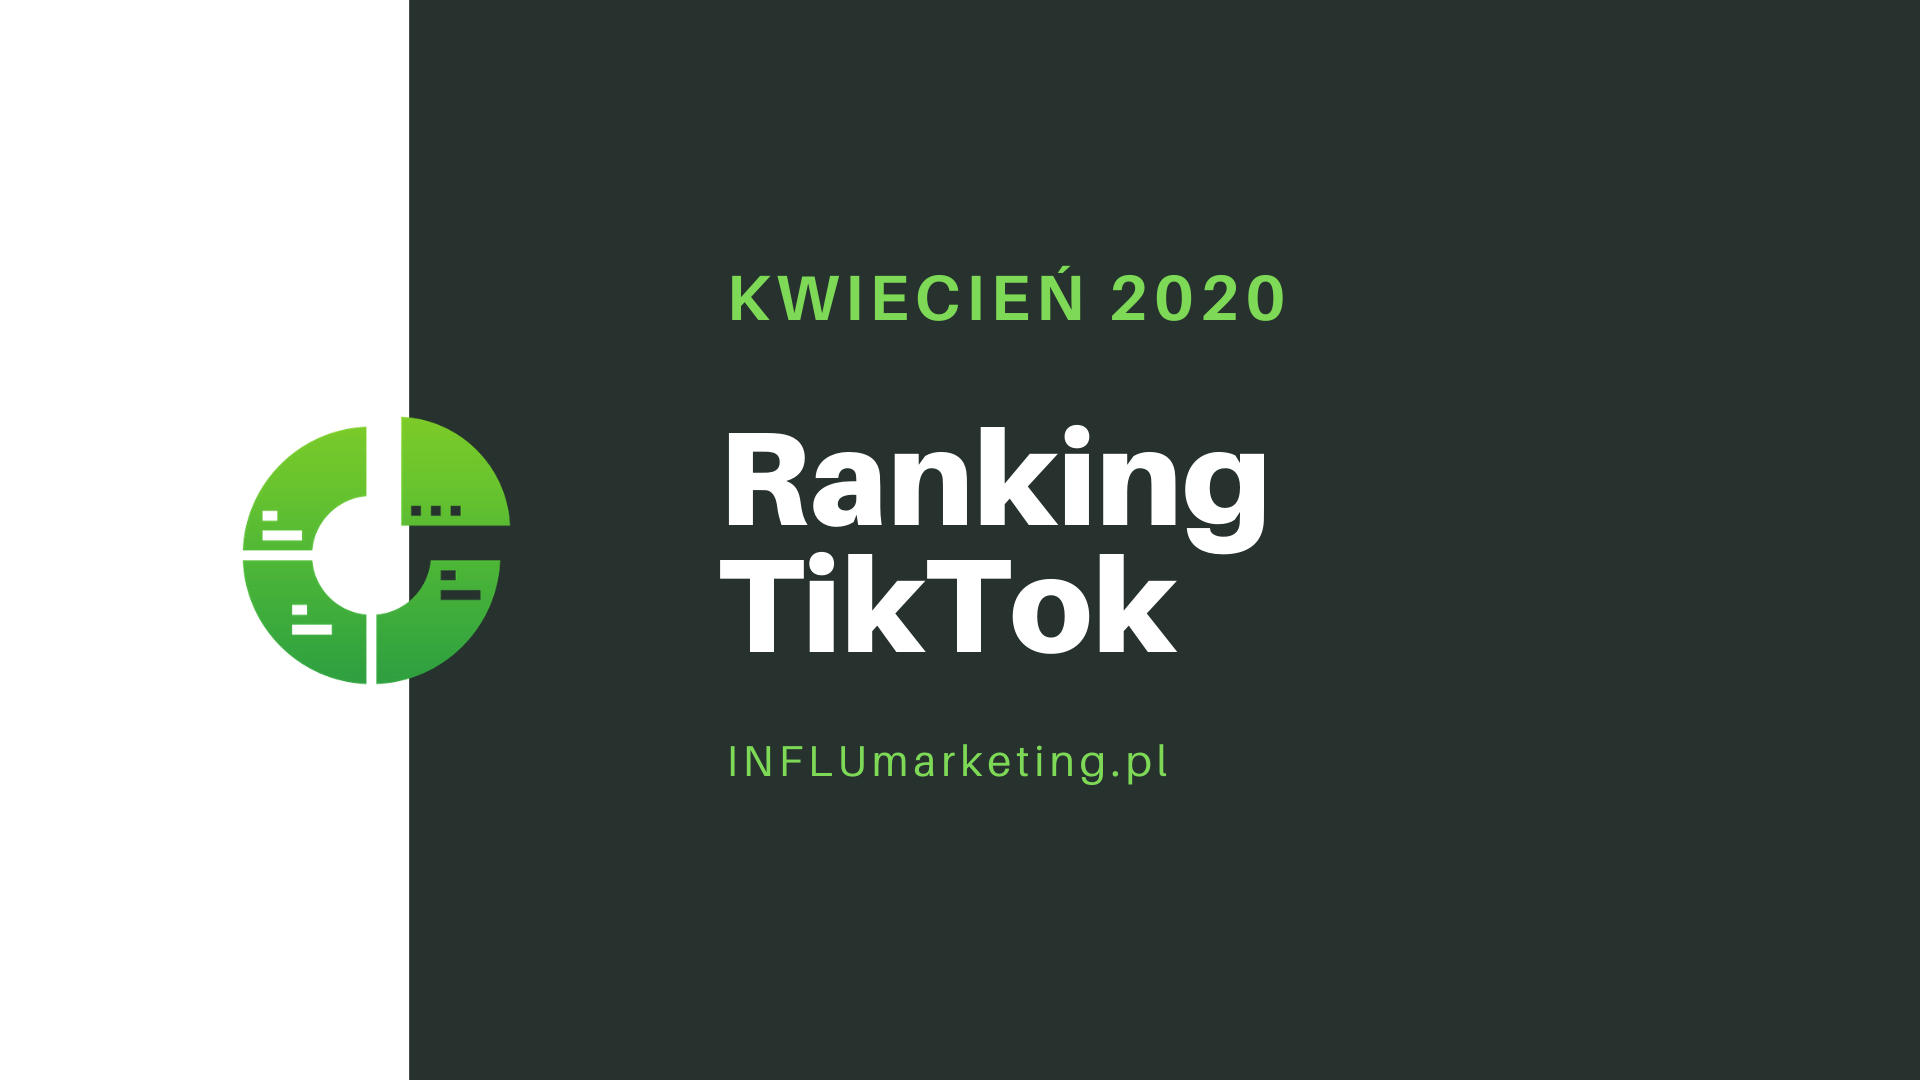 ranking tiktok polska 2020 cover photo kwiecień